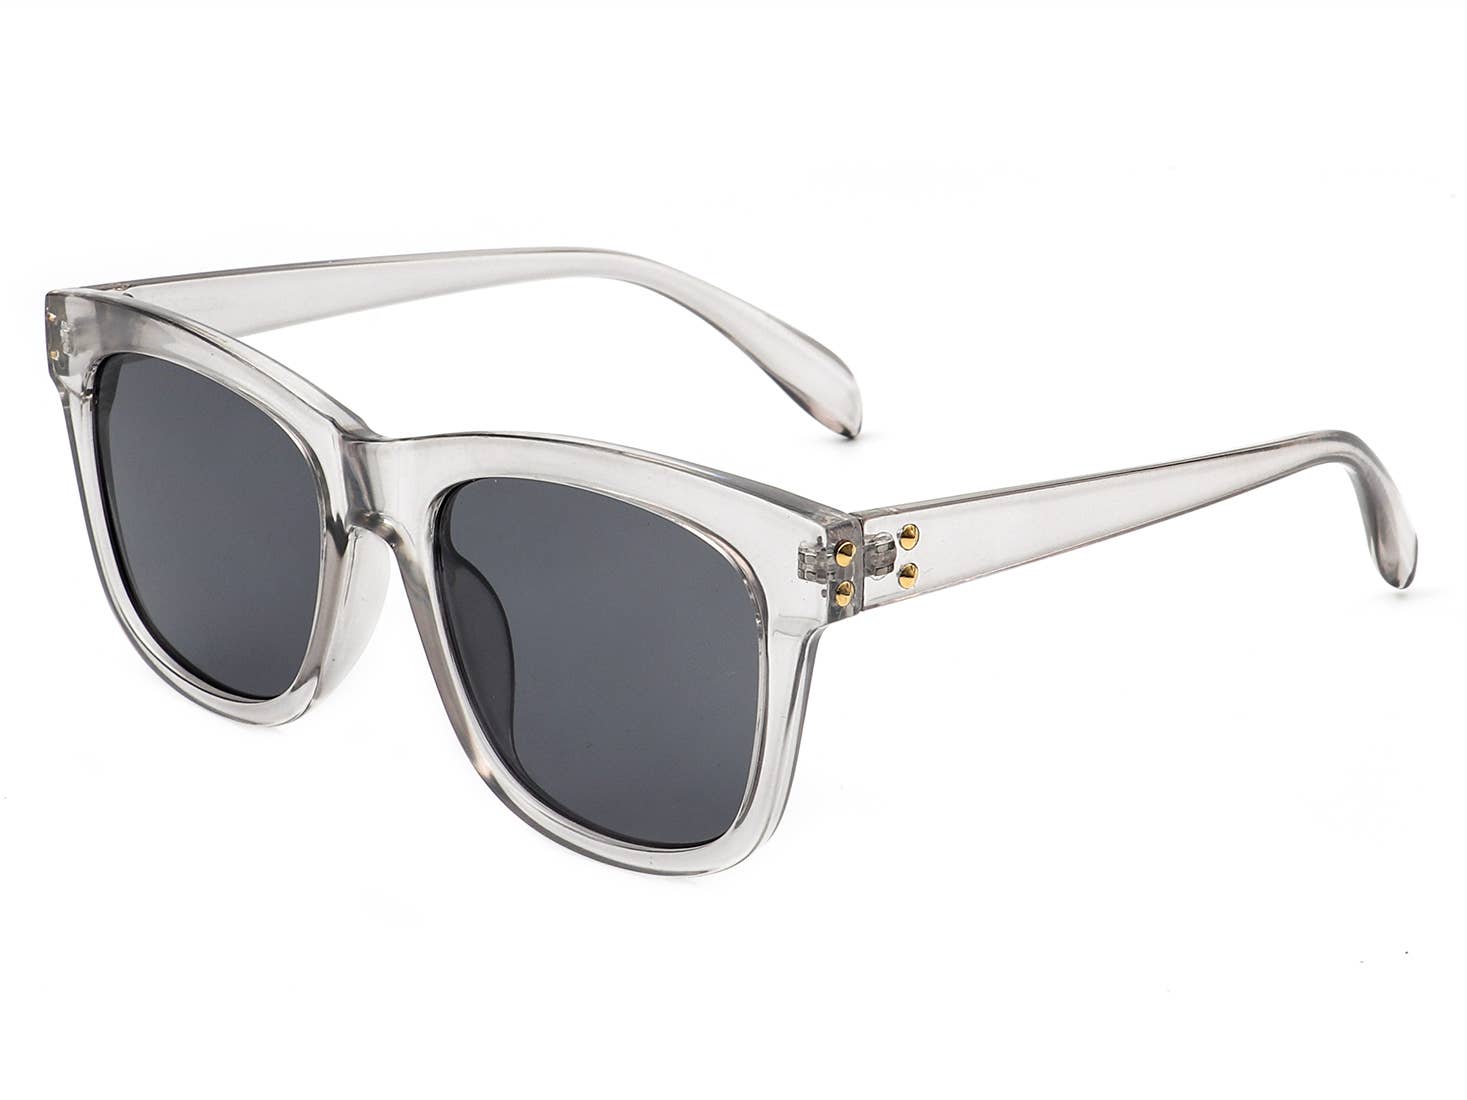 Classic Square Retro Fashion Sunglasses